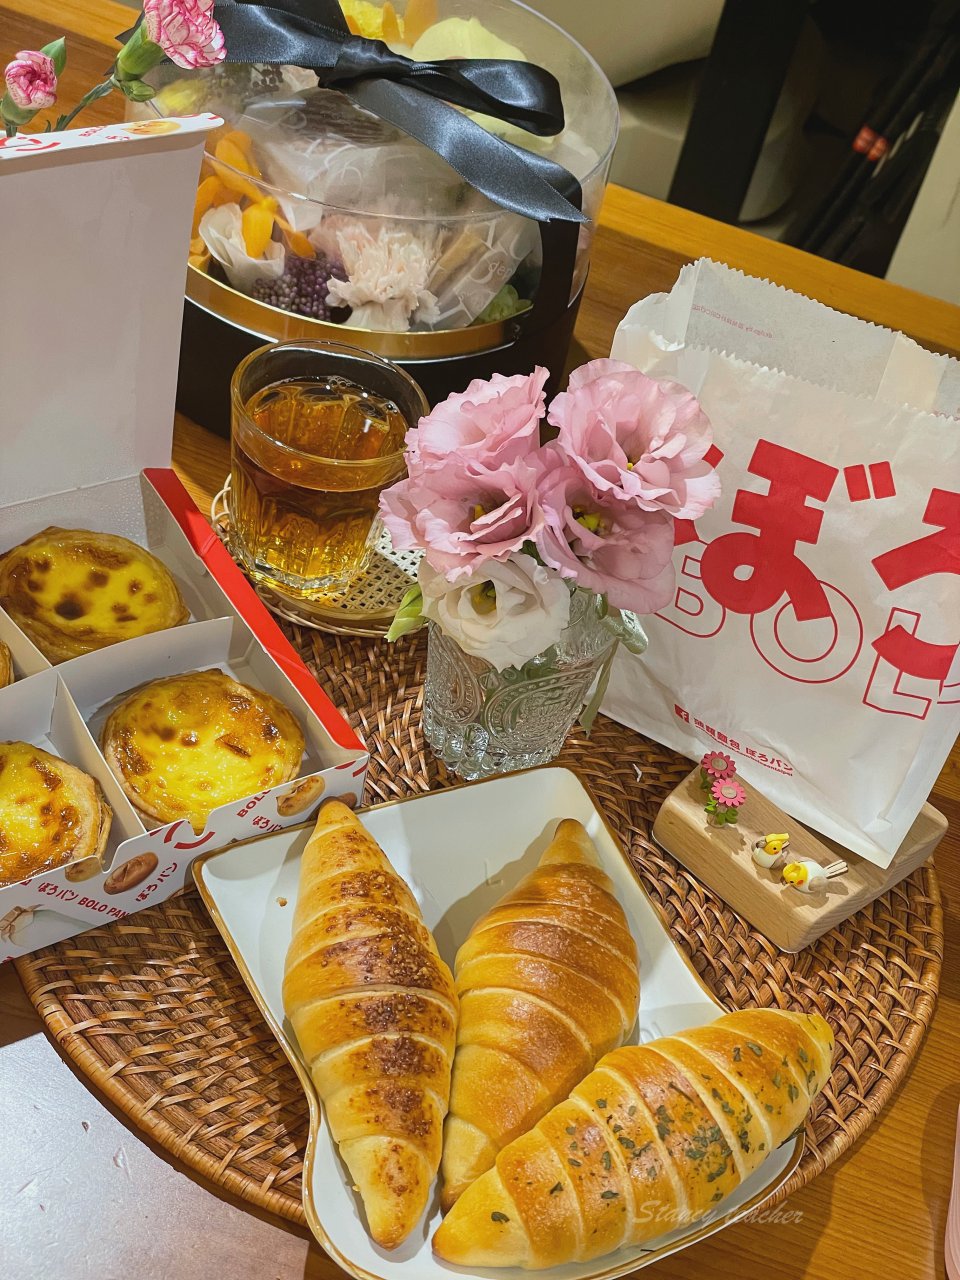 菠蘿麵包 ぼろパン BOLO PAN 公館店 好吃麵包推薦 連周董也愛的菠蘿麵包、奶油捲、葡式蛋塔